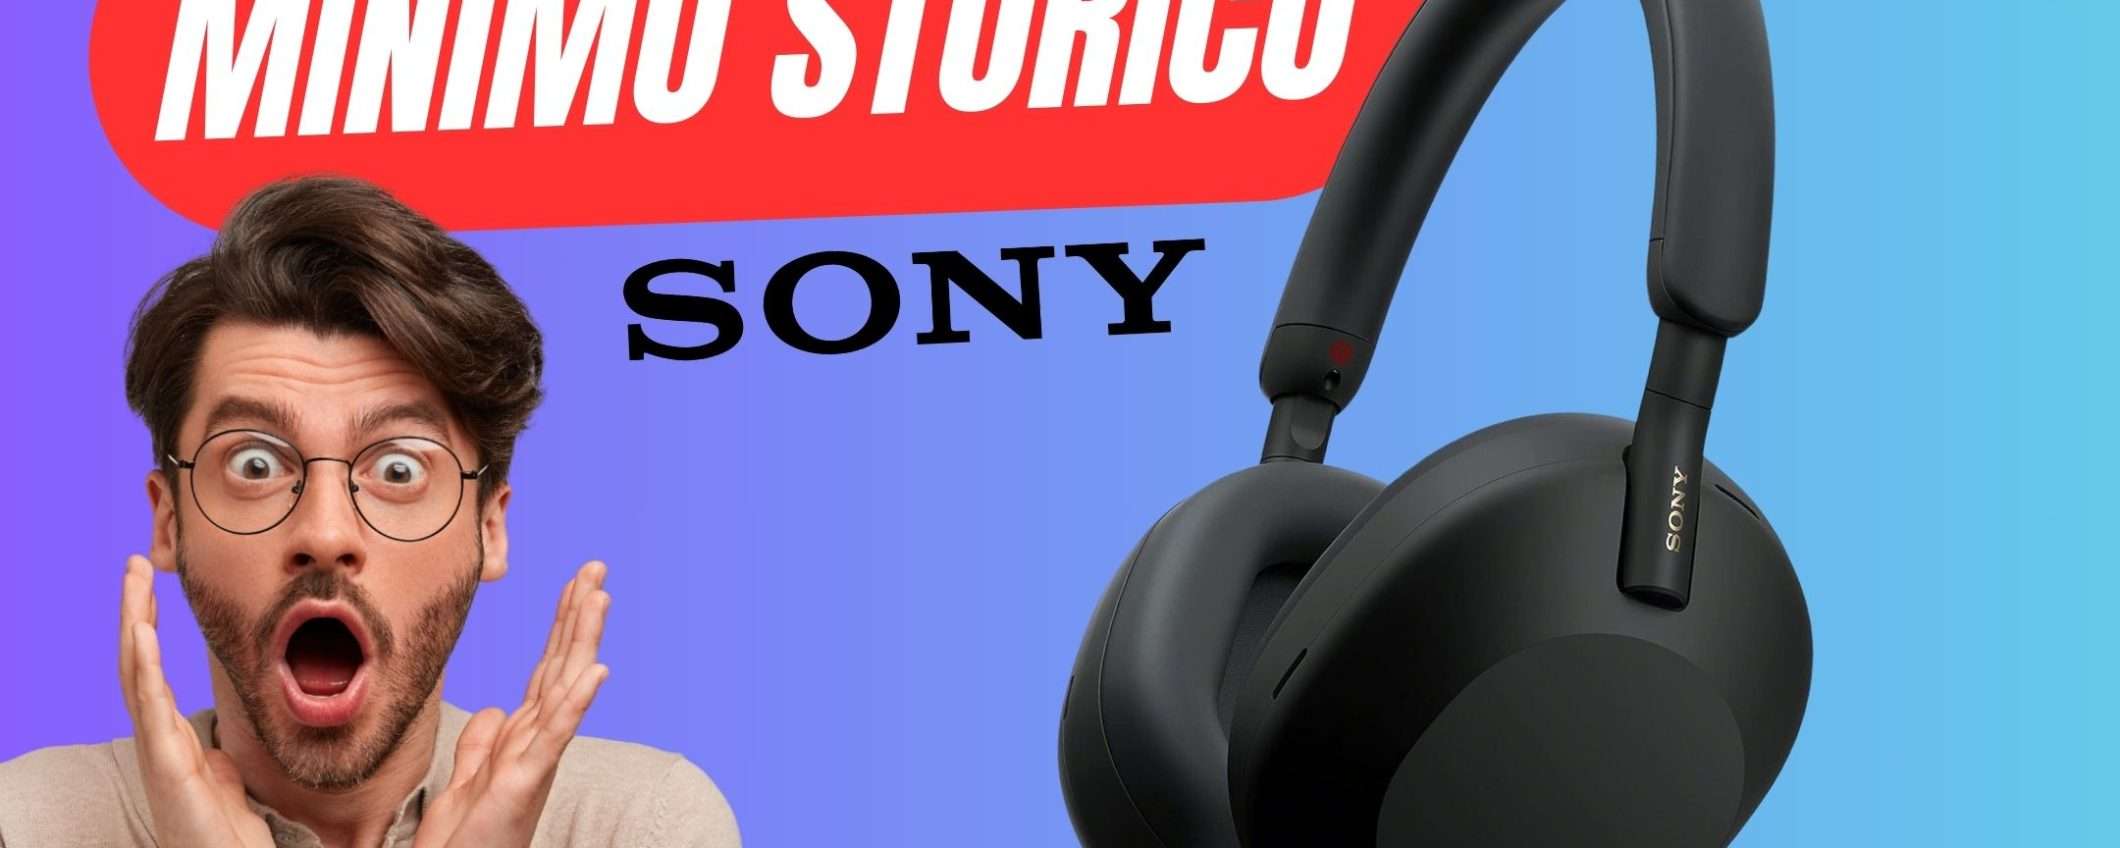 MINIMO STORICO per le Cuffie Sony tra le Migliori nel mercato!